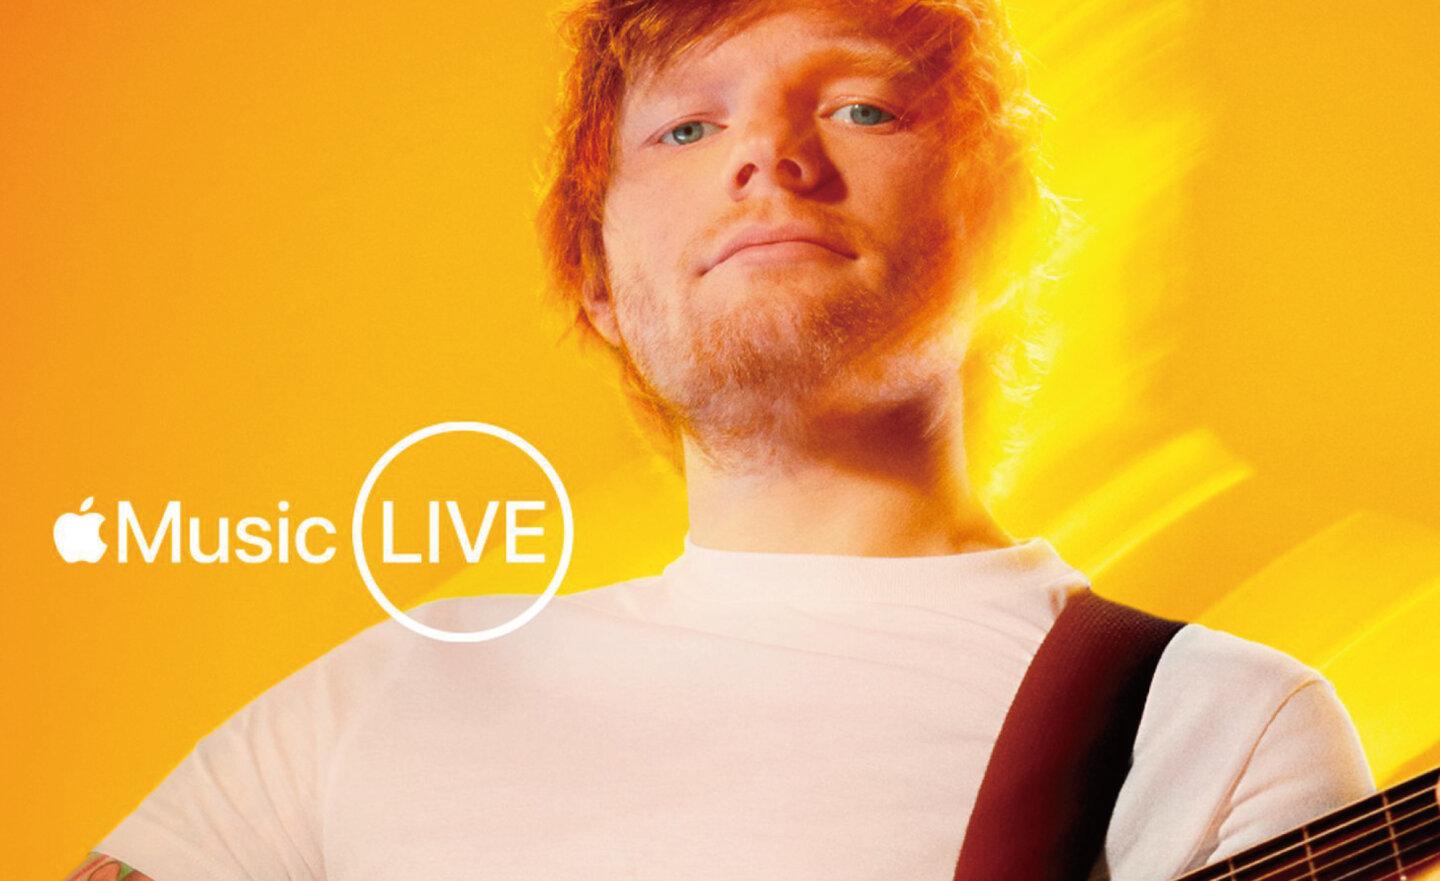 【免費】Apple Music 和 Apple TV+ 現場直播 Ed Sheeran 紅髮艾德音樂會